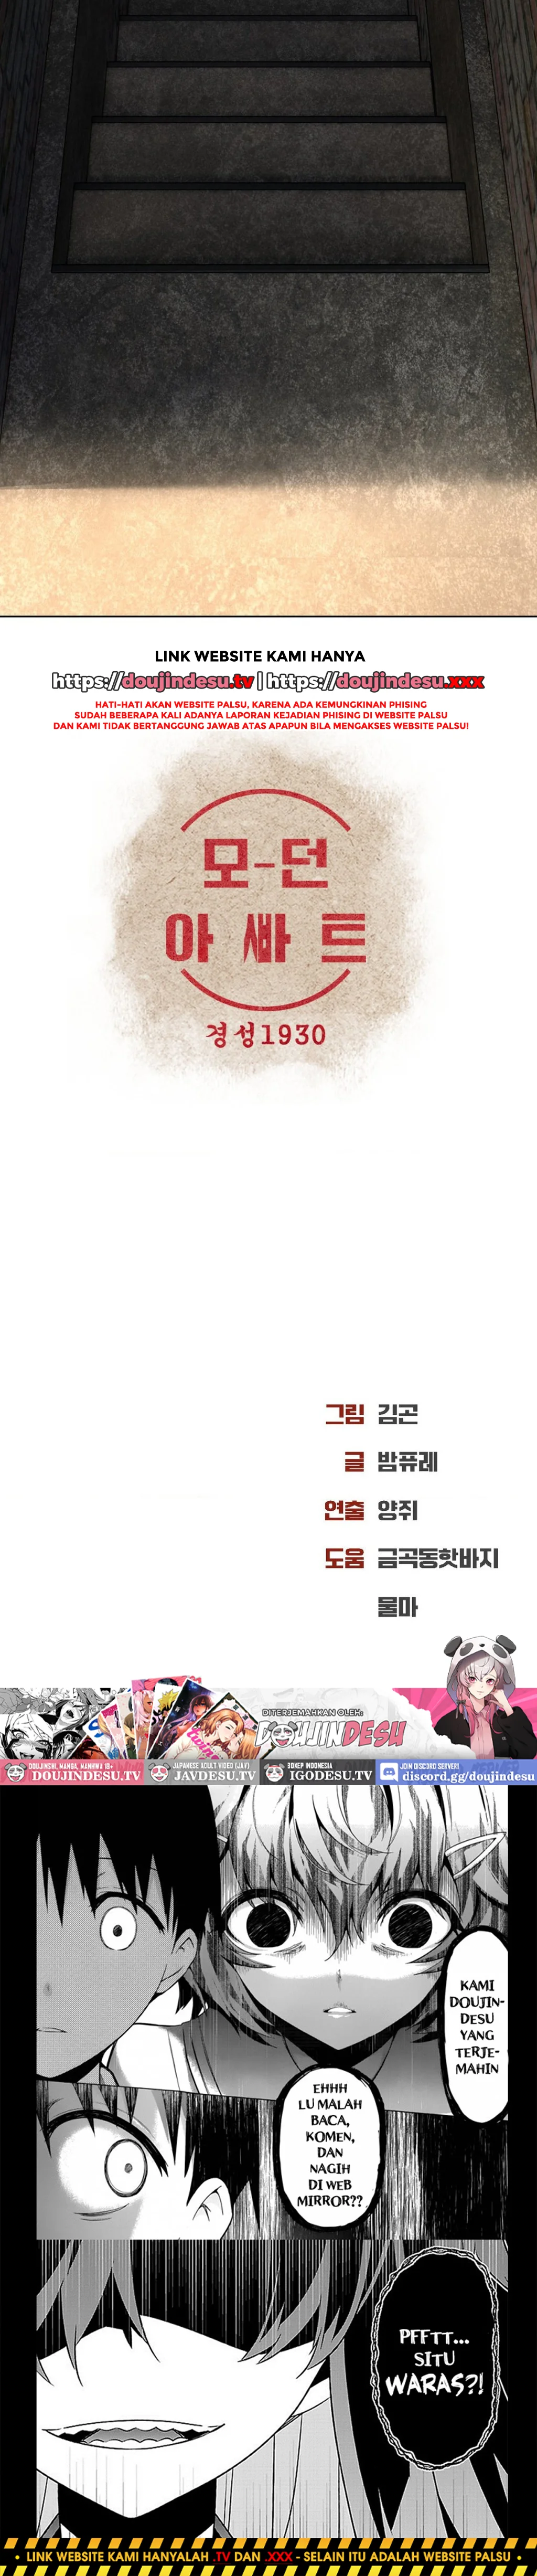 Read manhwa Modern Apartment, Gyeongseong 1930 Chapter 20 - SauceManhwa.com